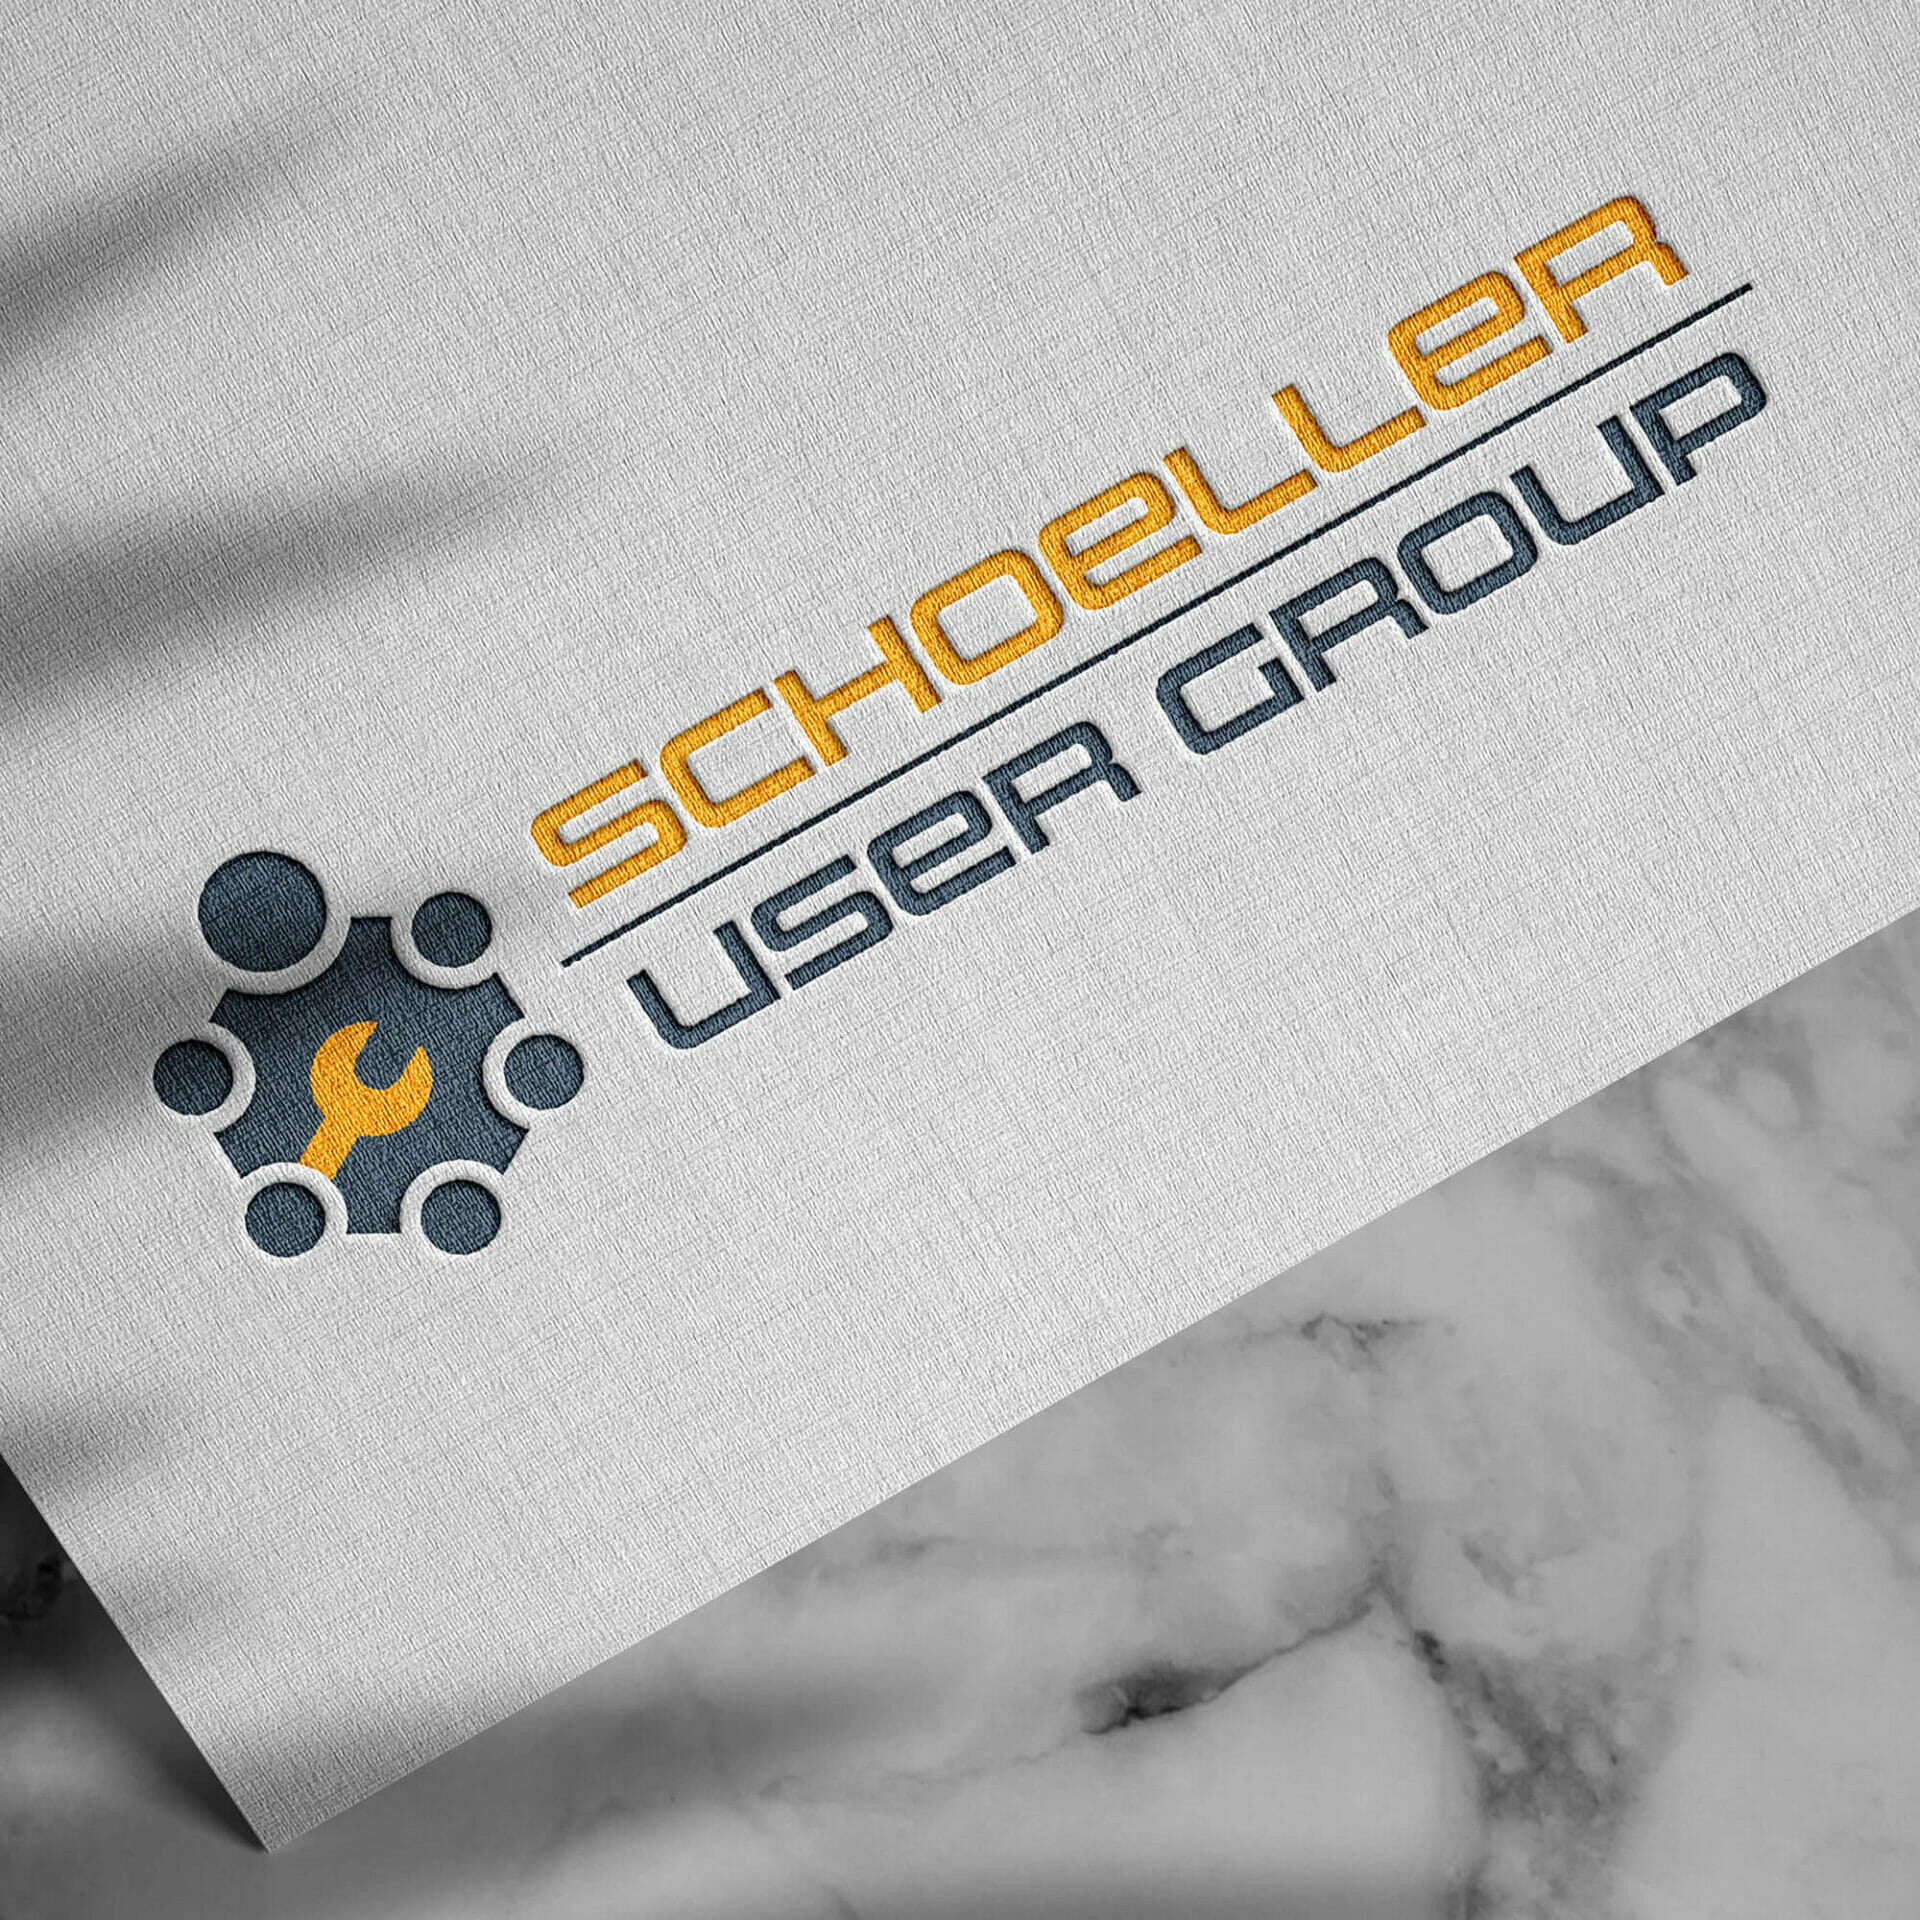 Logodesign für eine Praxis-Usergroup und Workshop